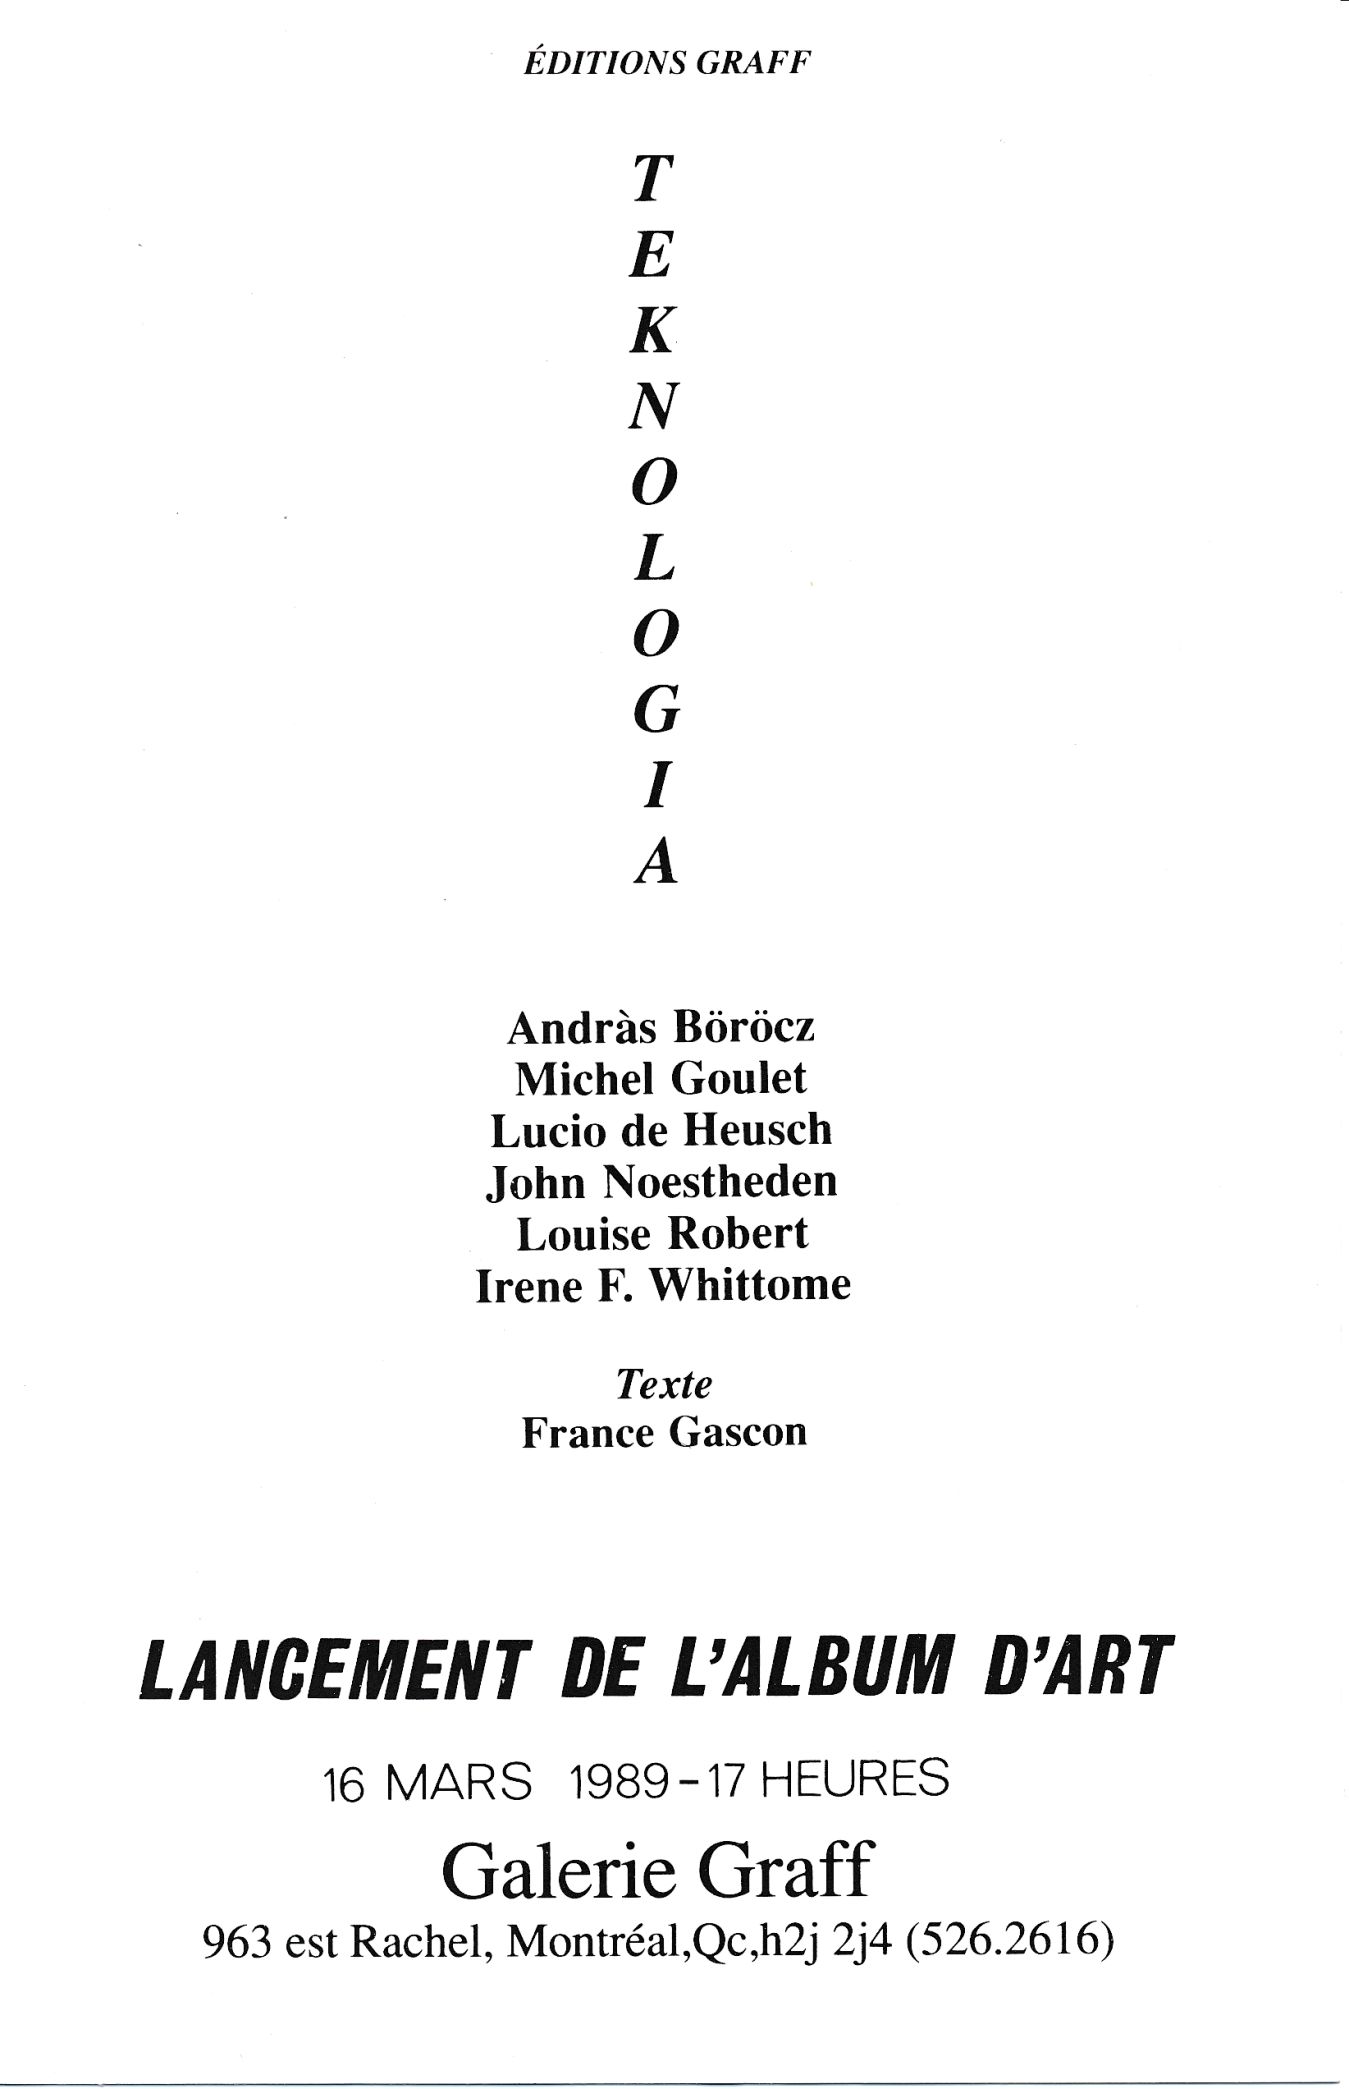 Carton d’invitation de l’exposition Éditions Graff. Teknologia: lancement de l'album d'art, Galerie Graff, Montréal, 1989.